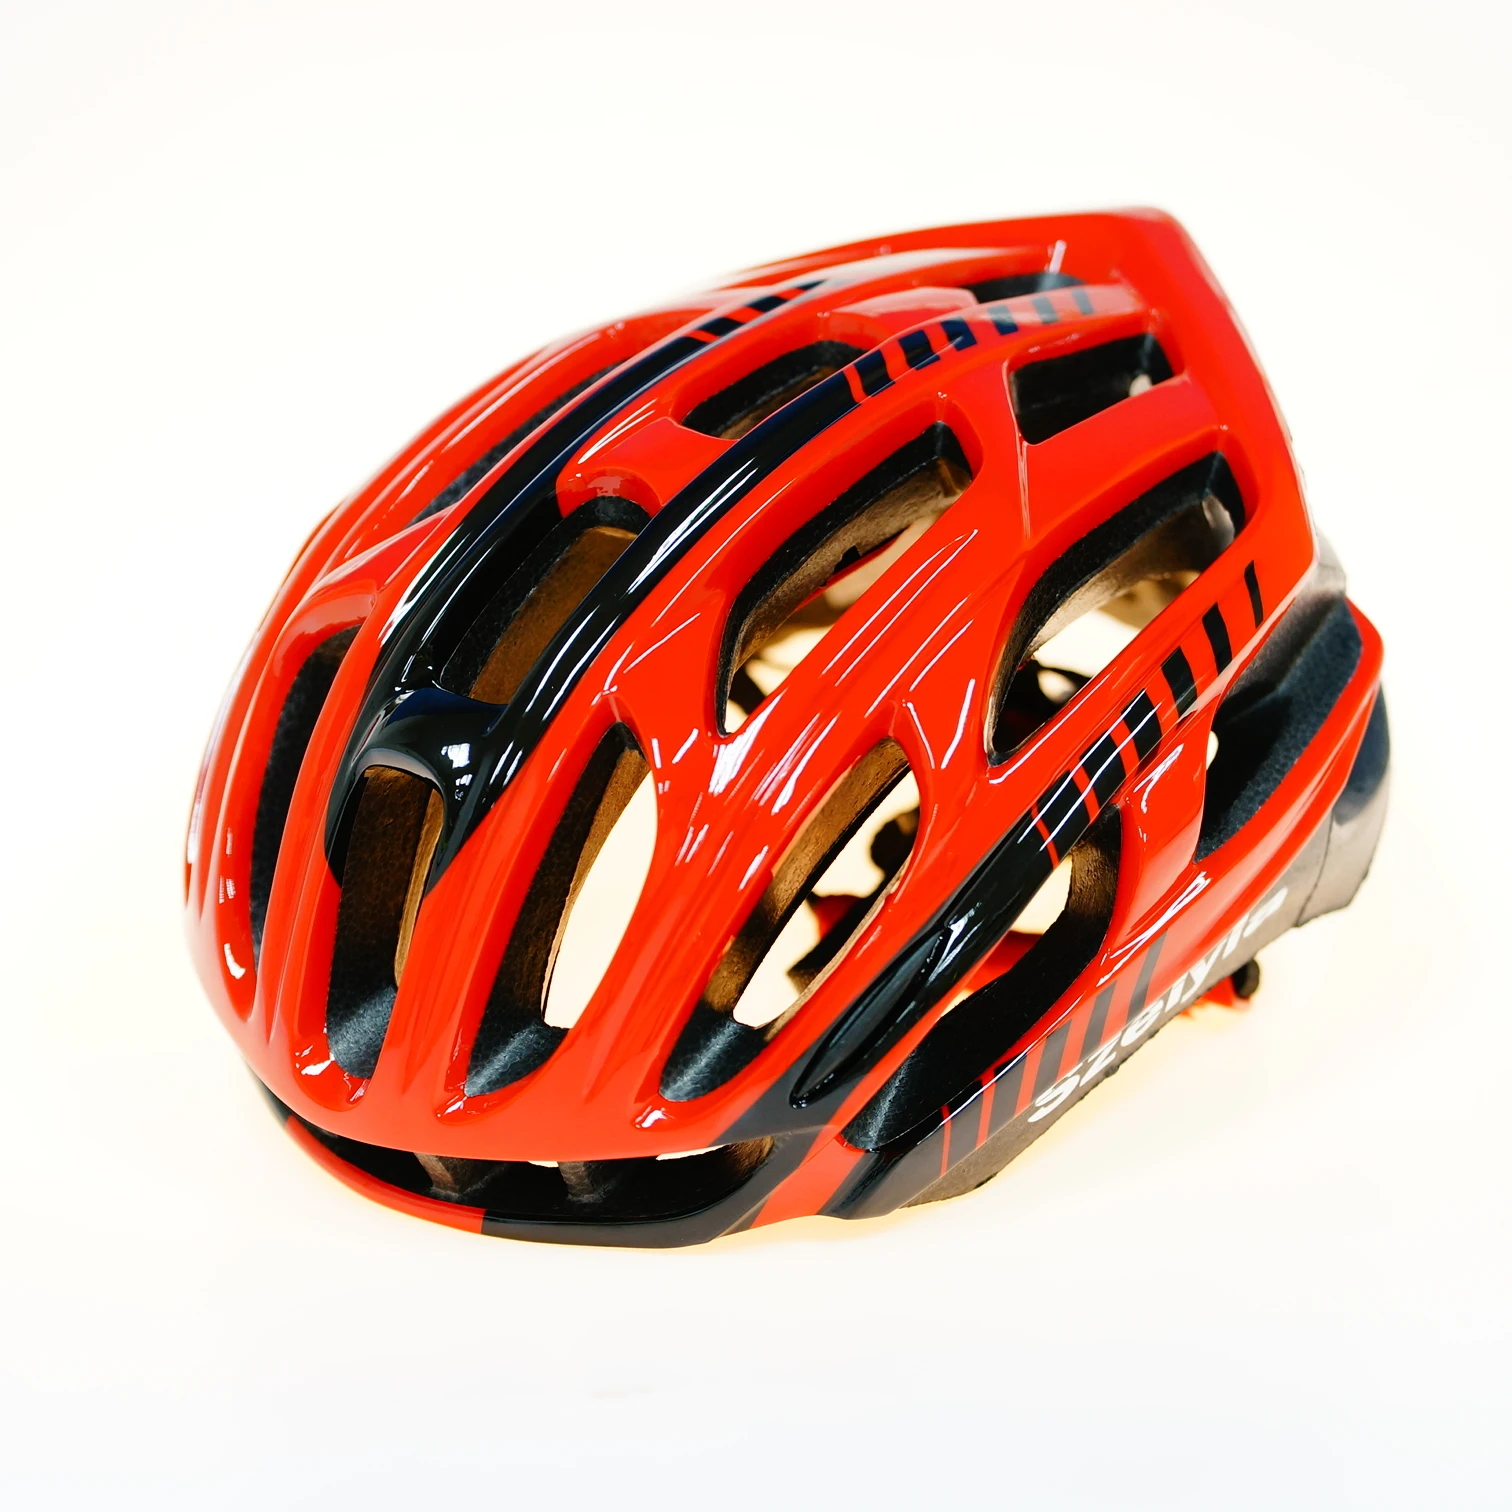 Scohiro work марка Шлем велосипед детский велосипеды мотошлем вело шлем велосипедный шлем шлем велосипедный отлита заодно горная дорога mtb